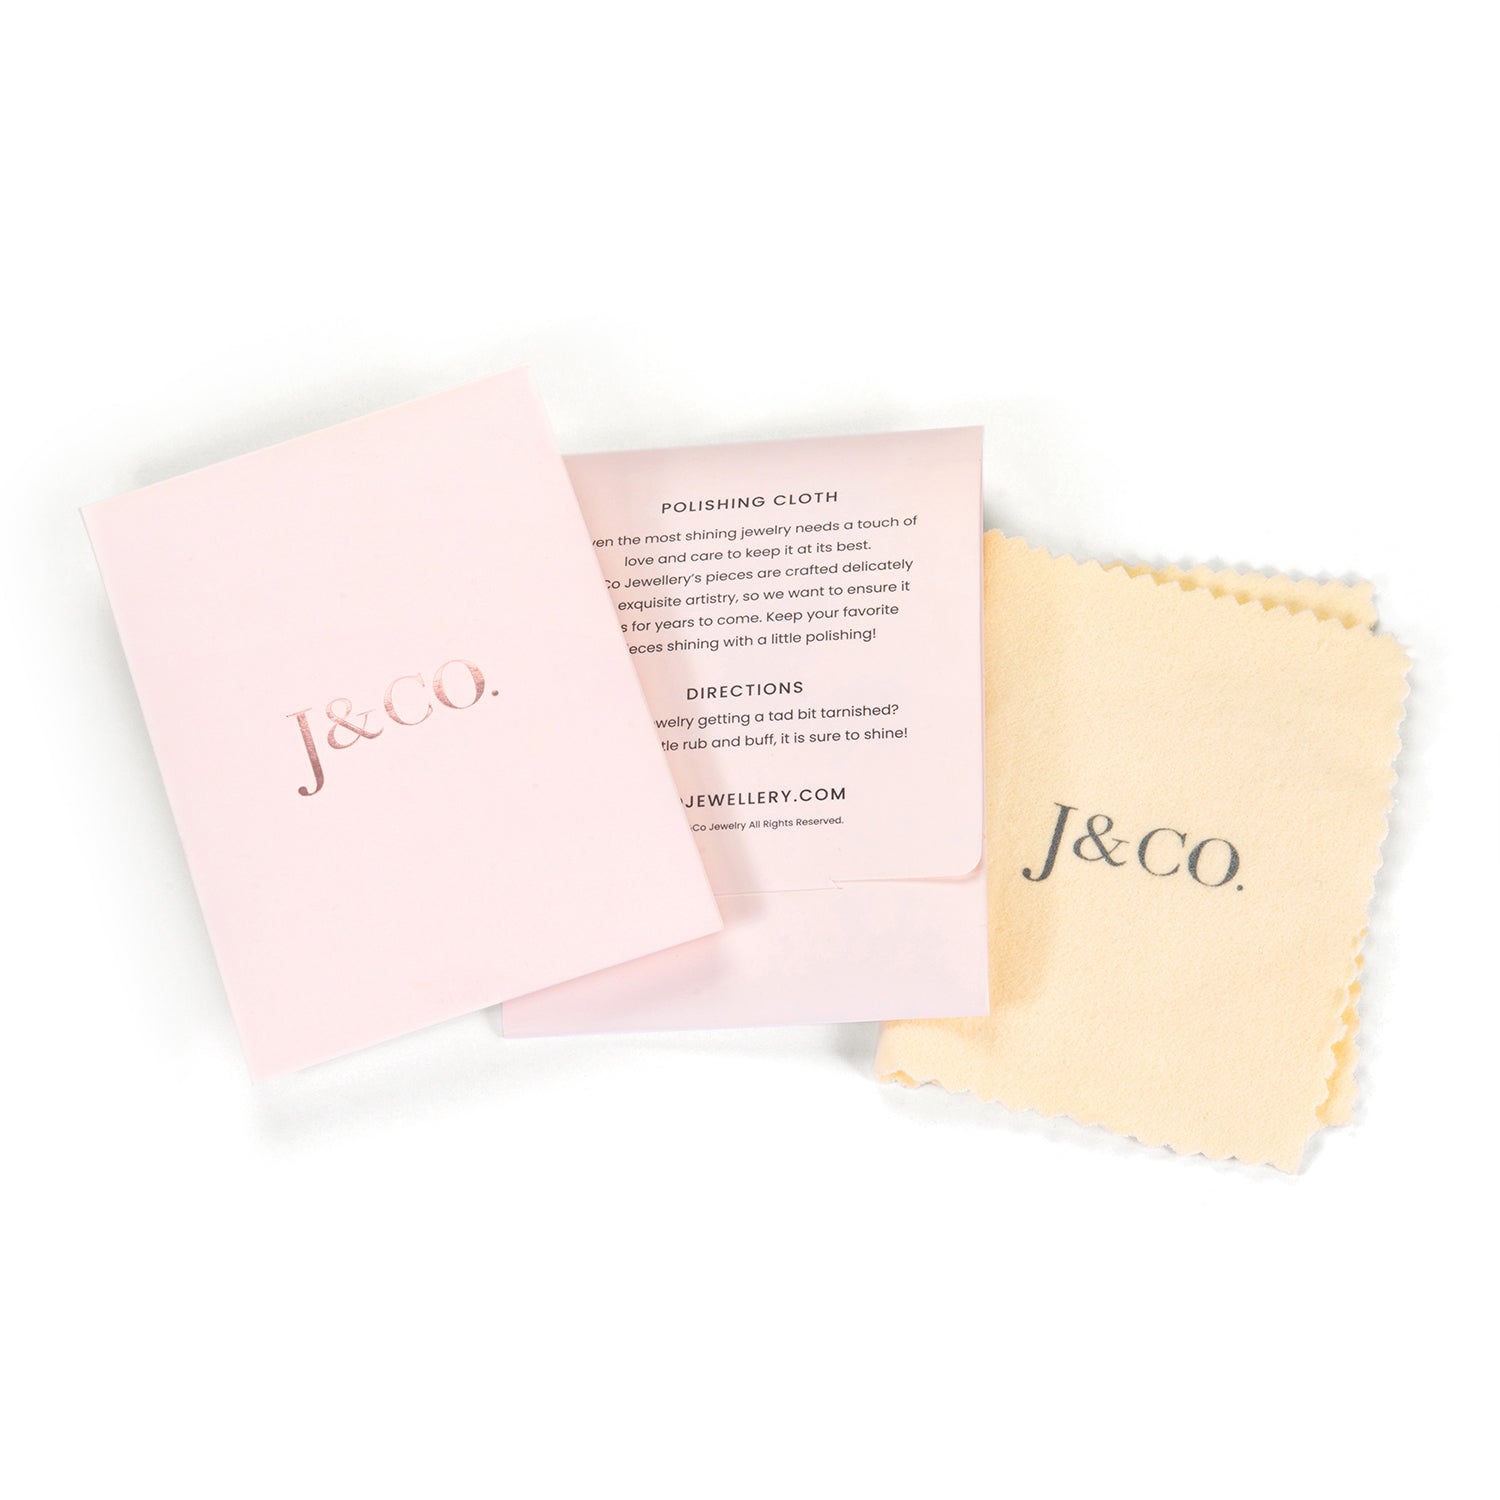 Jco Jewelry Polishing Cloth – J&CO Jewellery